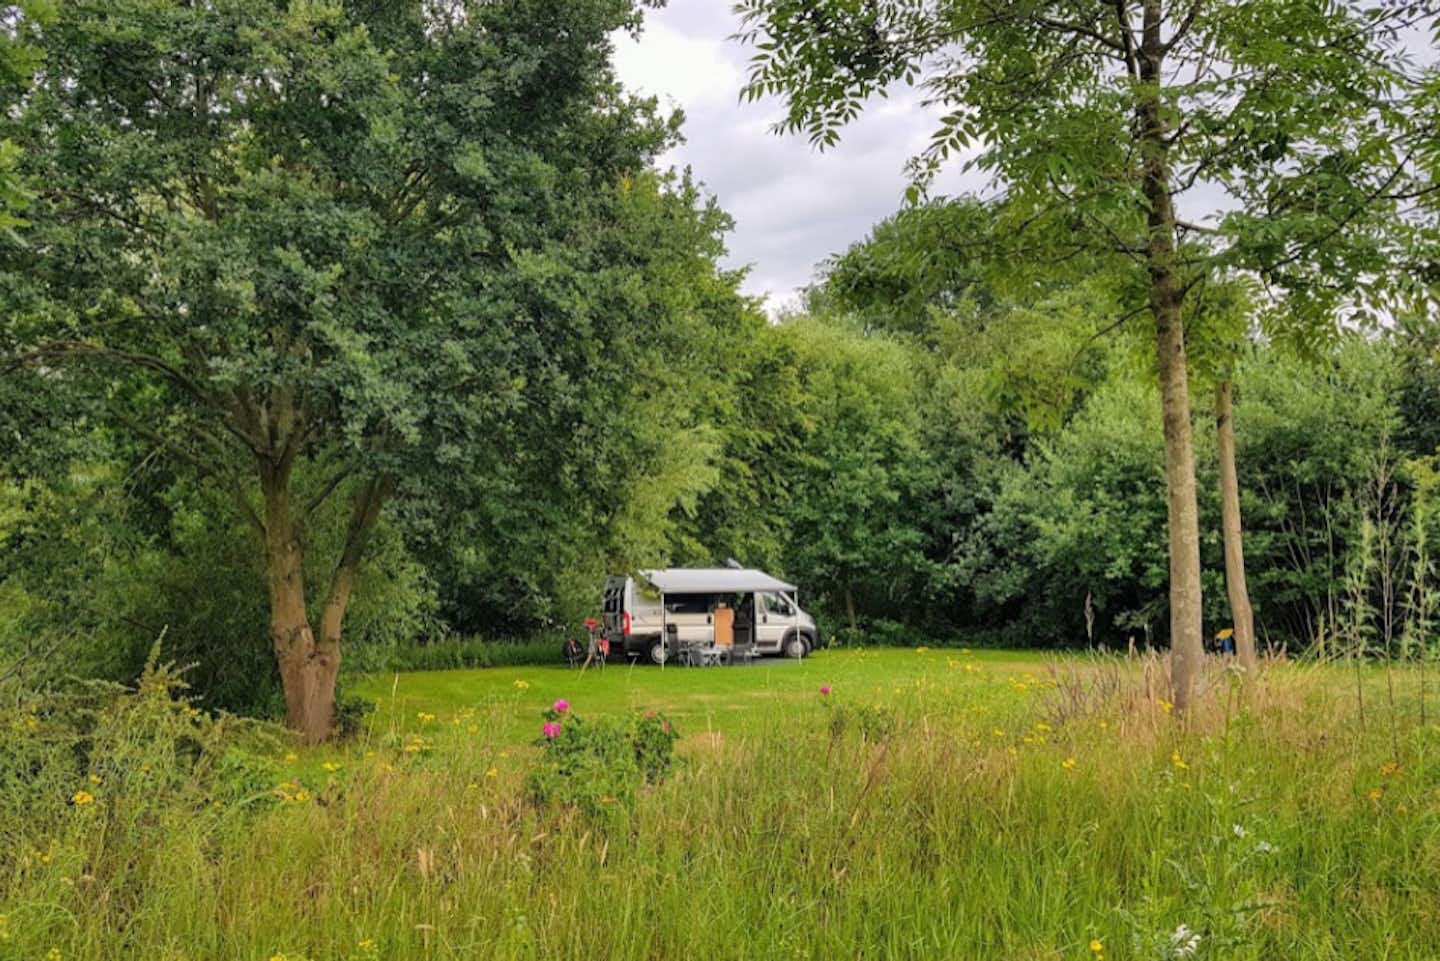 Vakantieverblijf De Rozenhorst - Blick auf einen Standplatz im Grünen umgeben von Bäumen